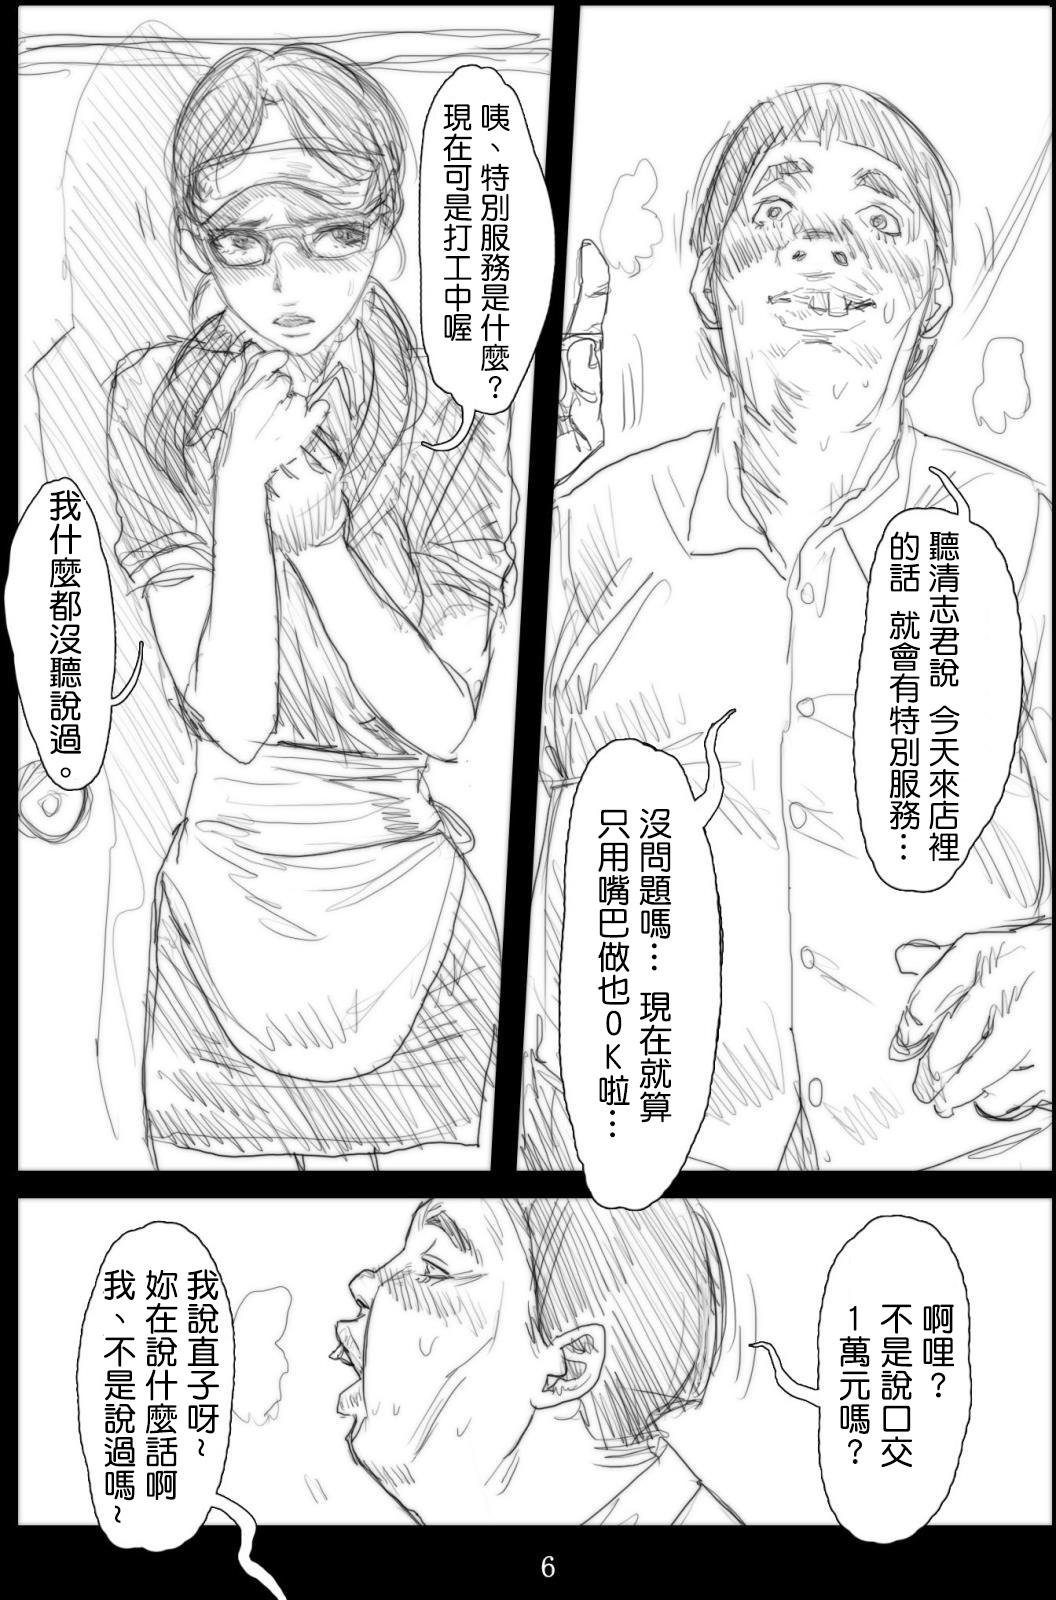 Exgirlfriend Renraku Tore nakatta 1-kkagetsukan Kanojo ni Nani ga Atta no ka... 5 Putas - Page 6